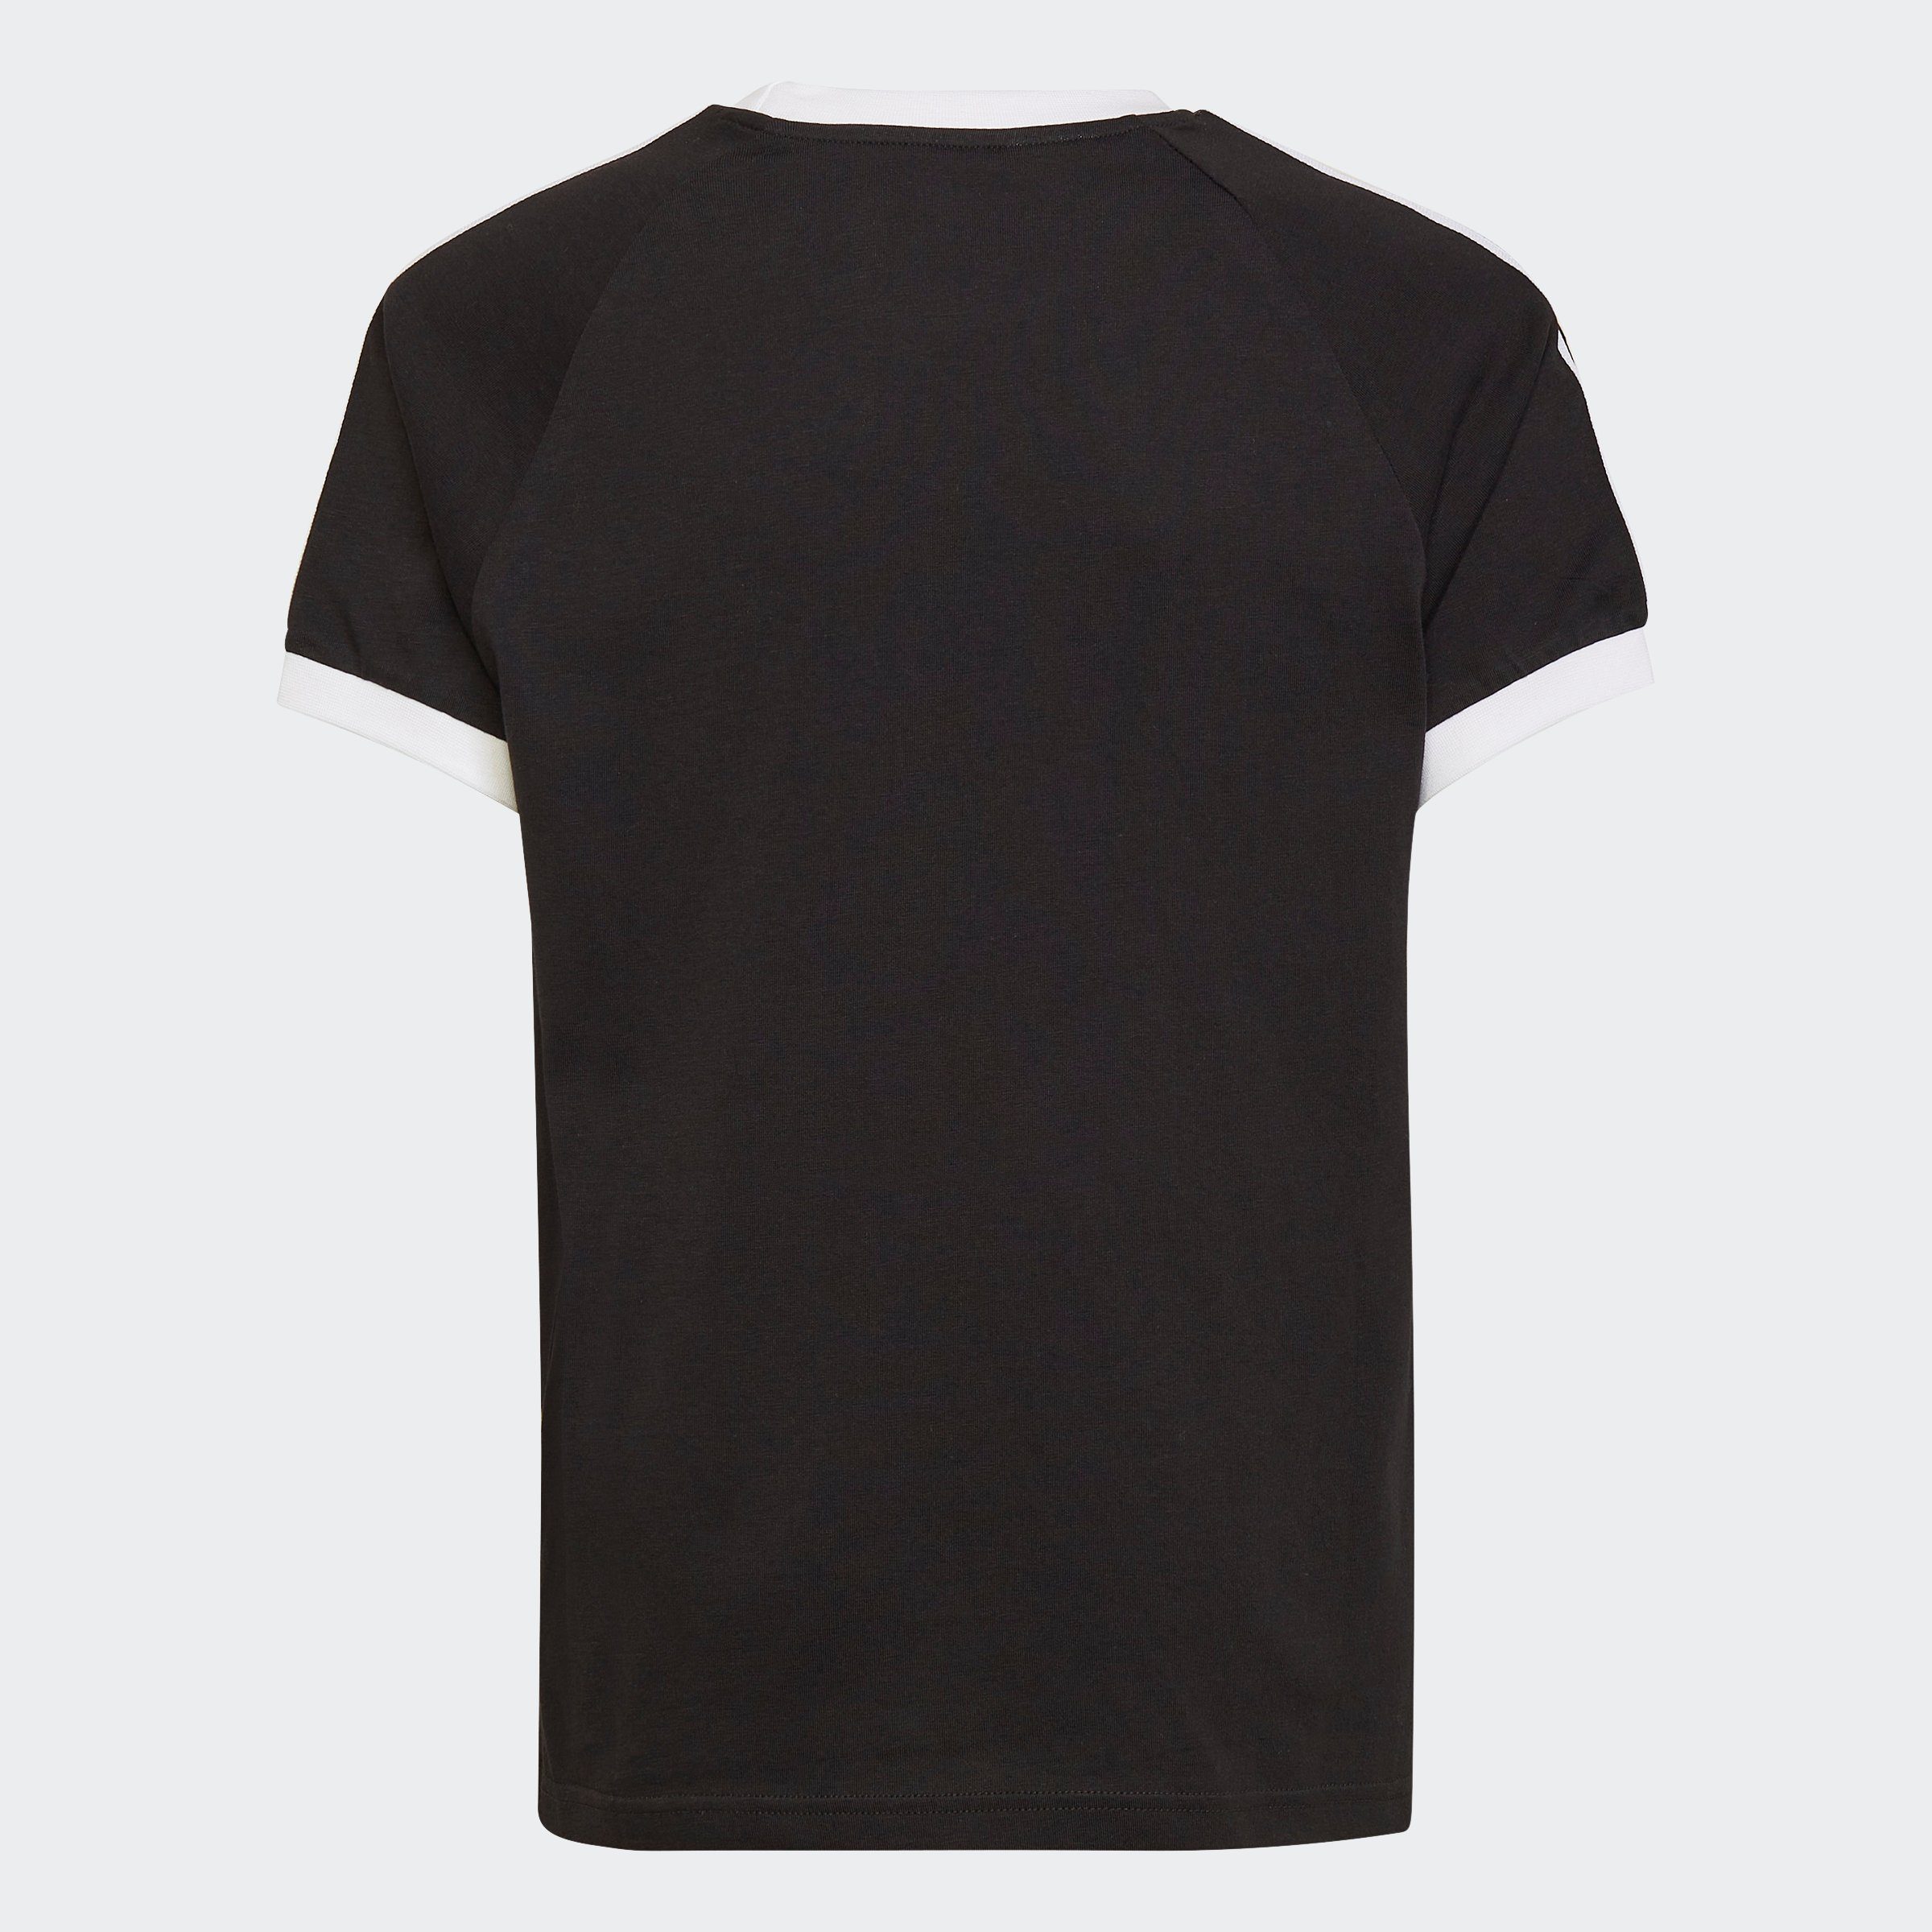 Black 3-STREIFEN T-Shirt ADICOLOR adidas Originals